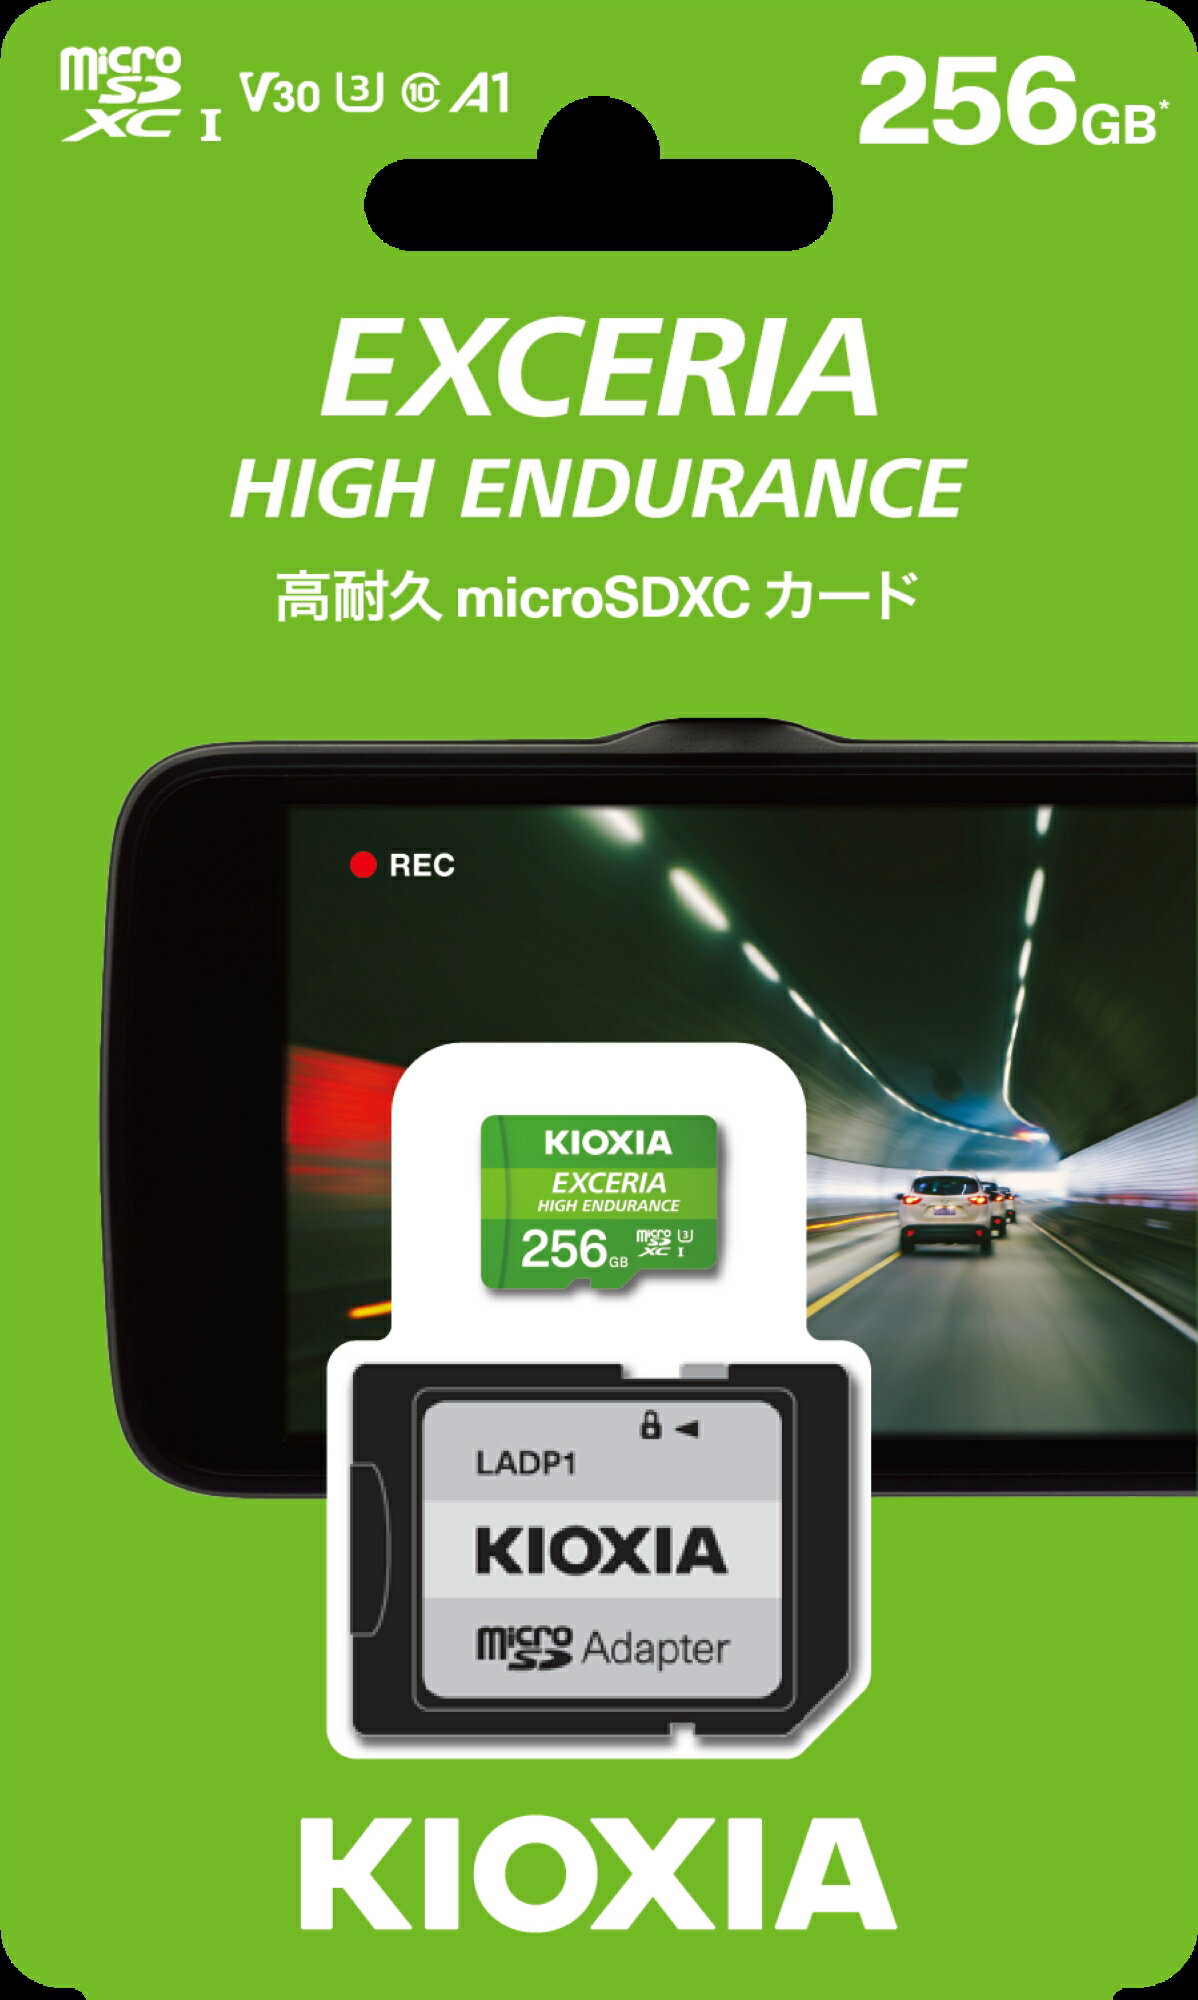 キオクシア(KIOXIA) EXCERIA HIGH ENDURANCE 高耐久 microSDXC UHS-Iメモリカード(SDカード) 256GB